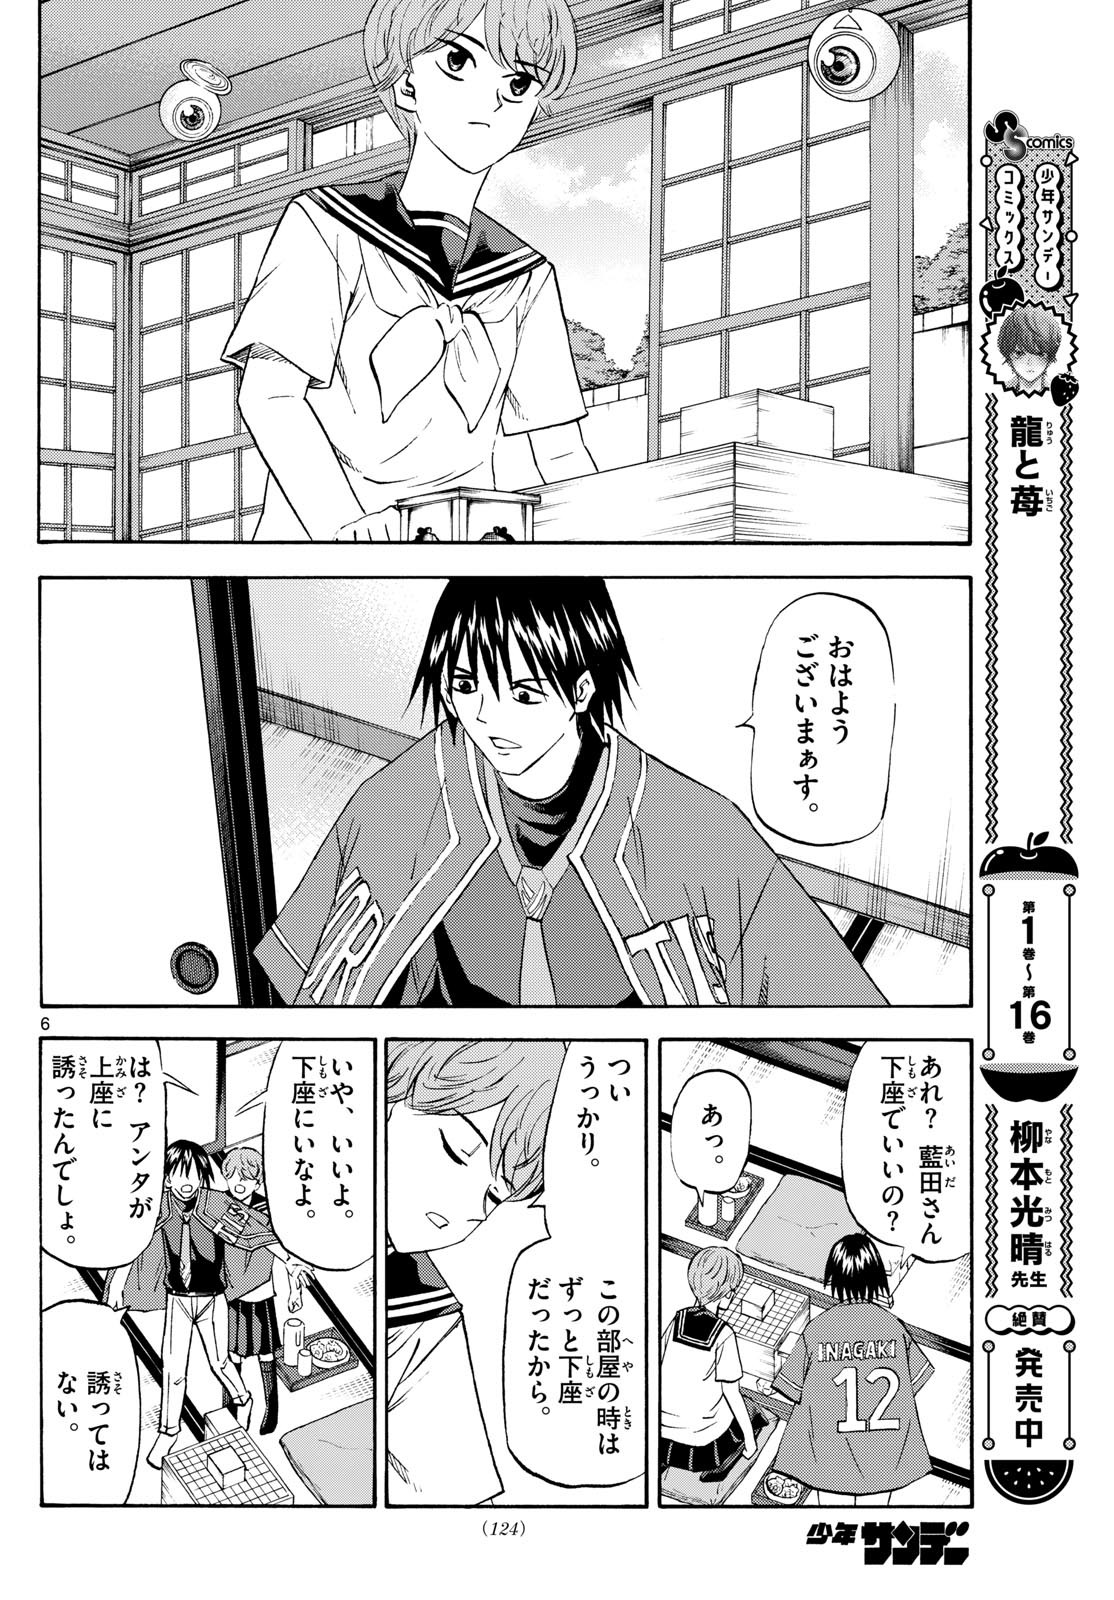 Tatsu to Ichigo - Chapter 197 - Page 6